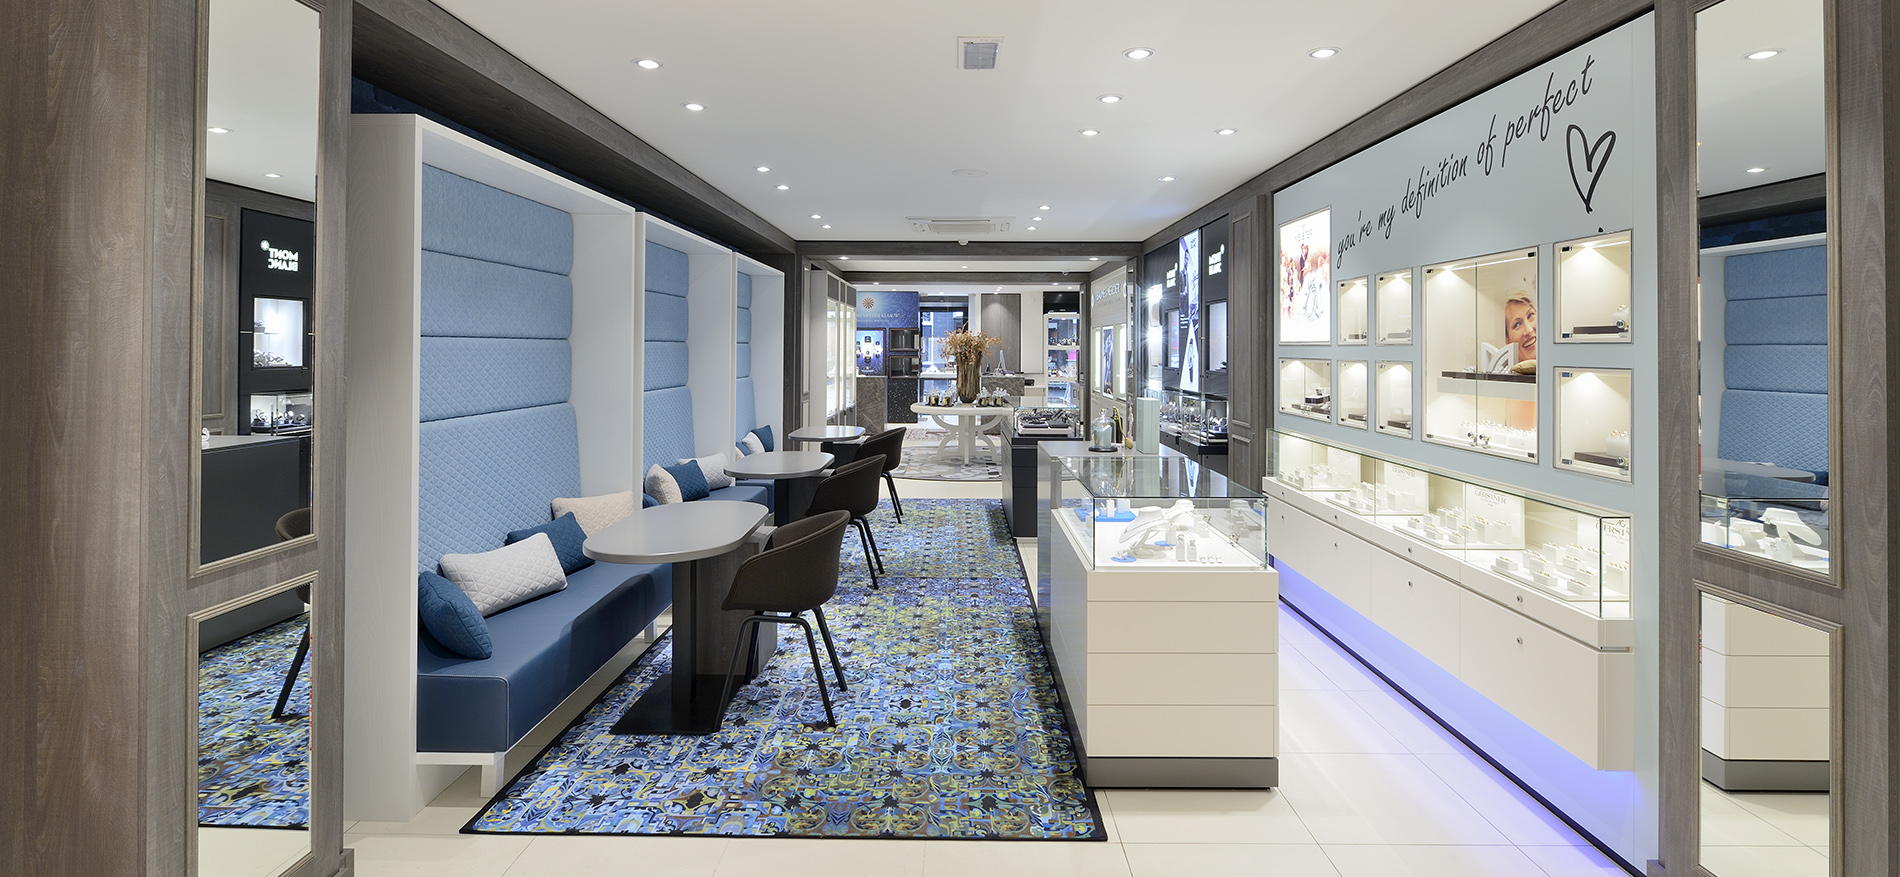 van Hell Juweliers, Apeldoorn (NL): Luxury Store design jeweler with famous brands - 